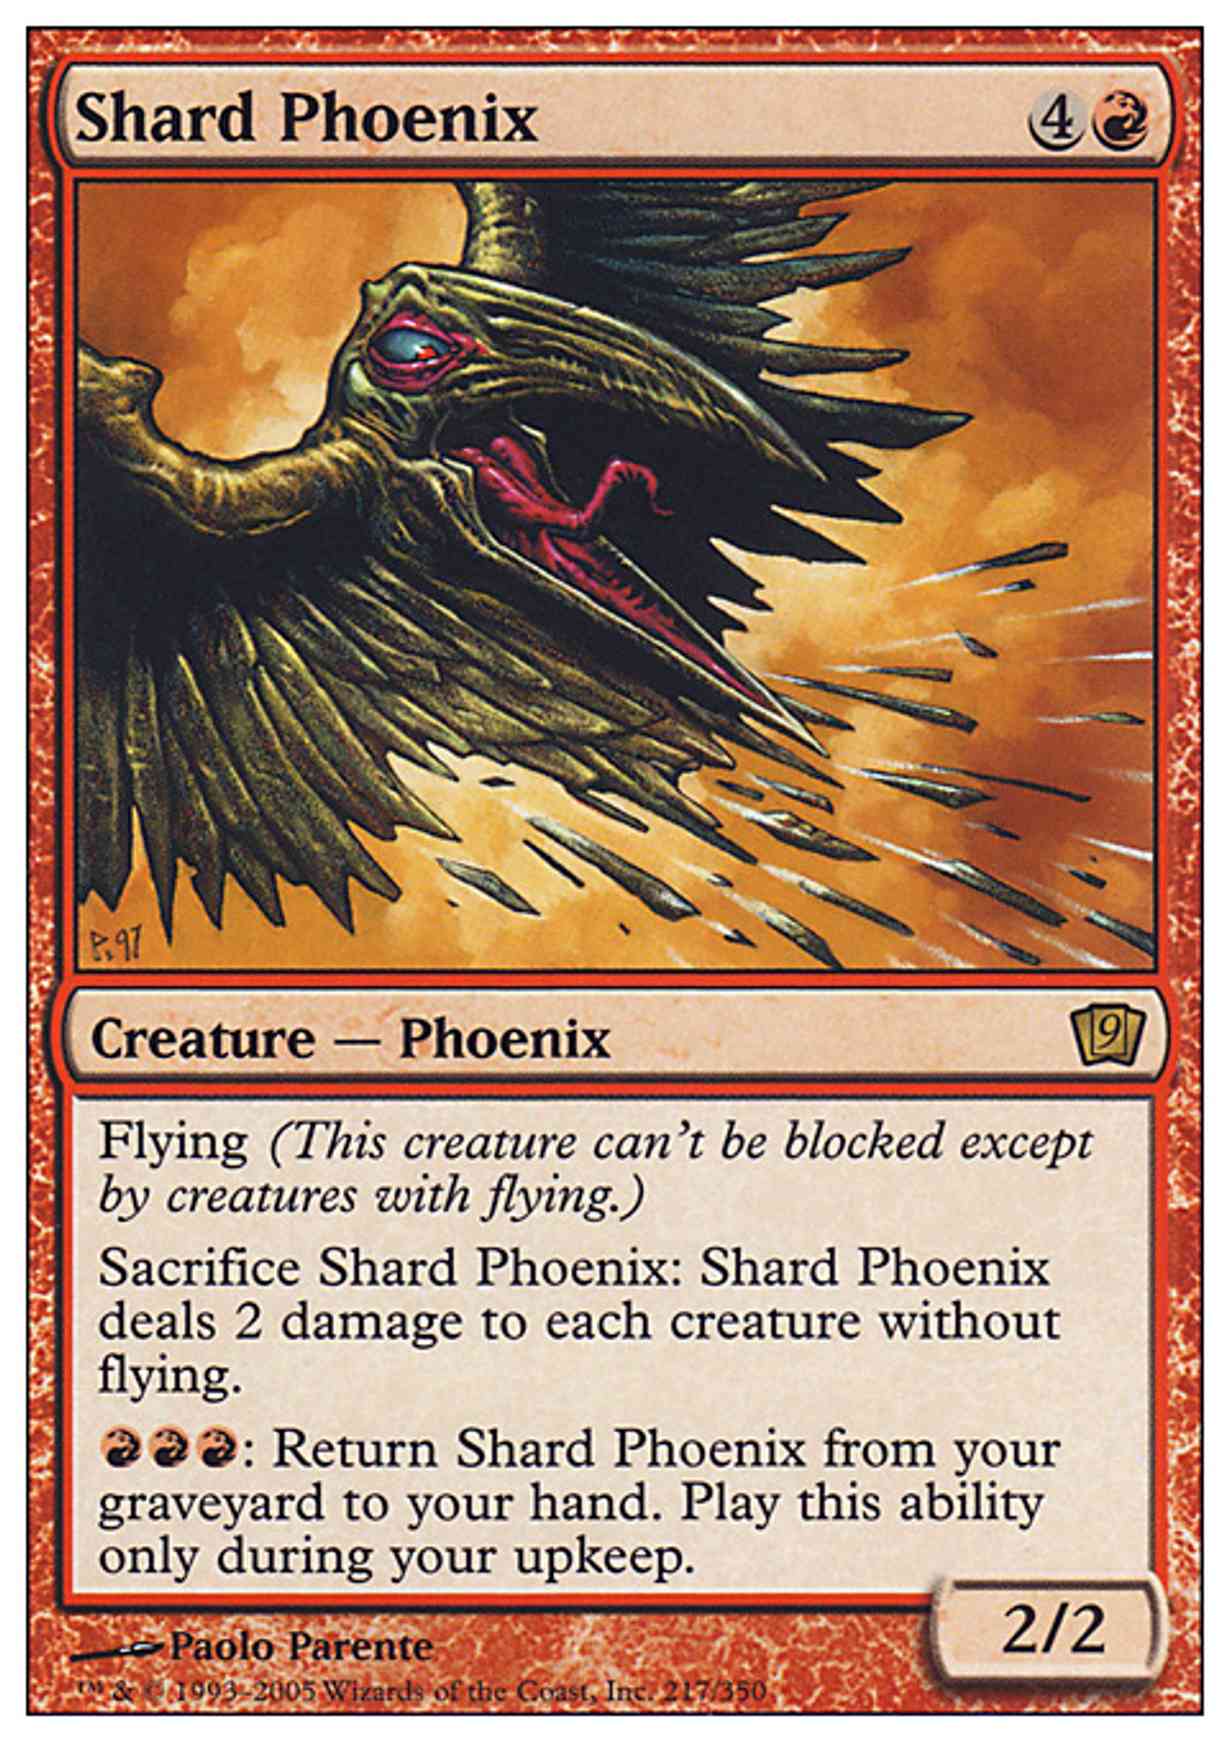 Shard Phoenix magic card front